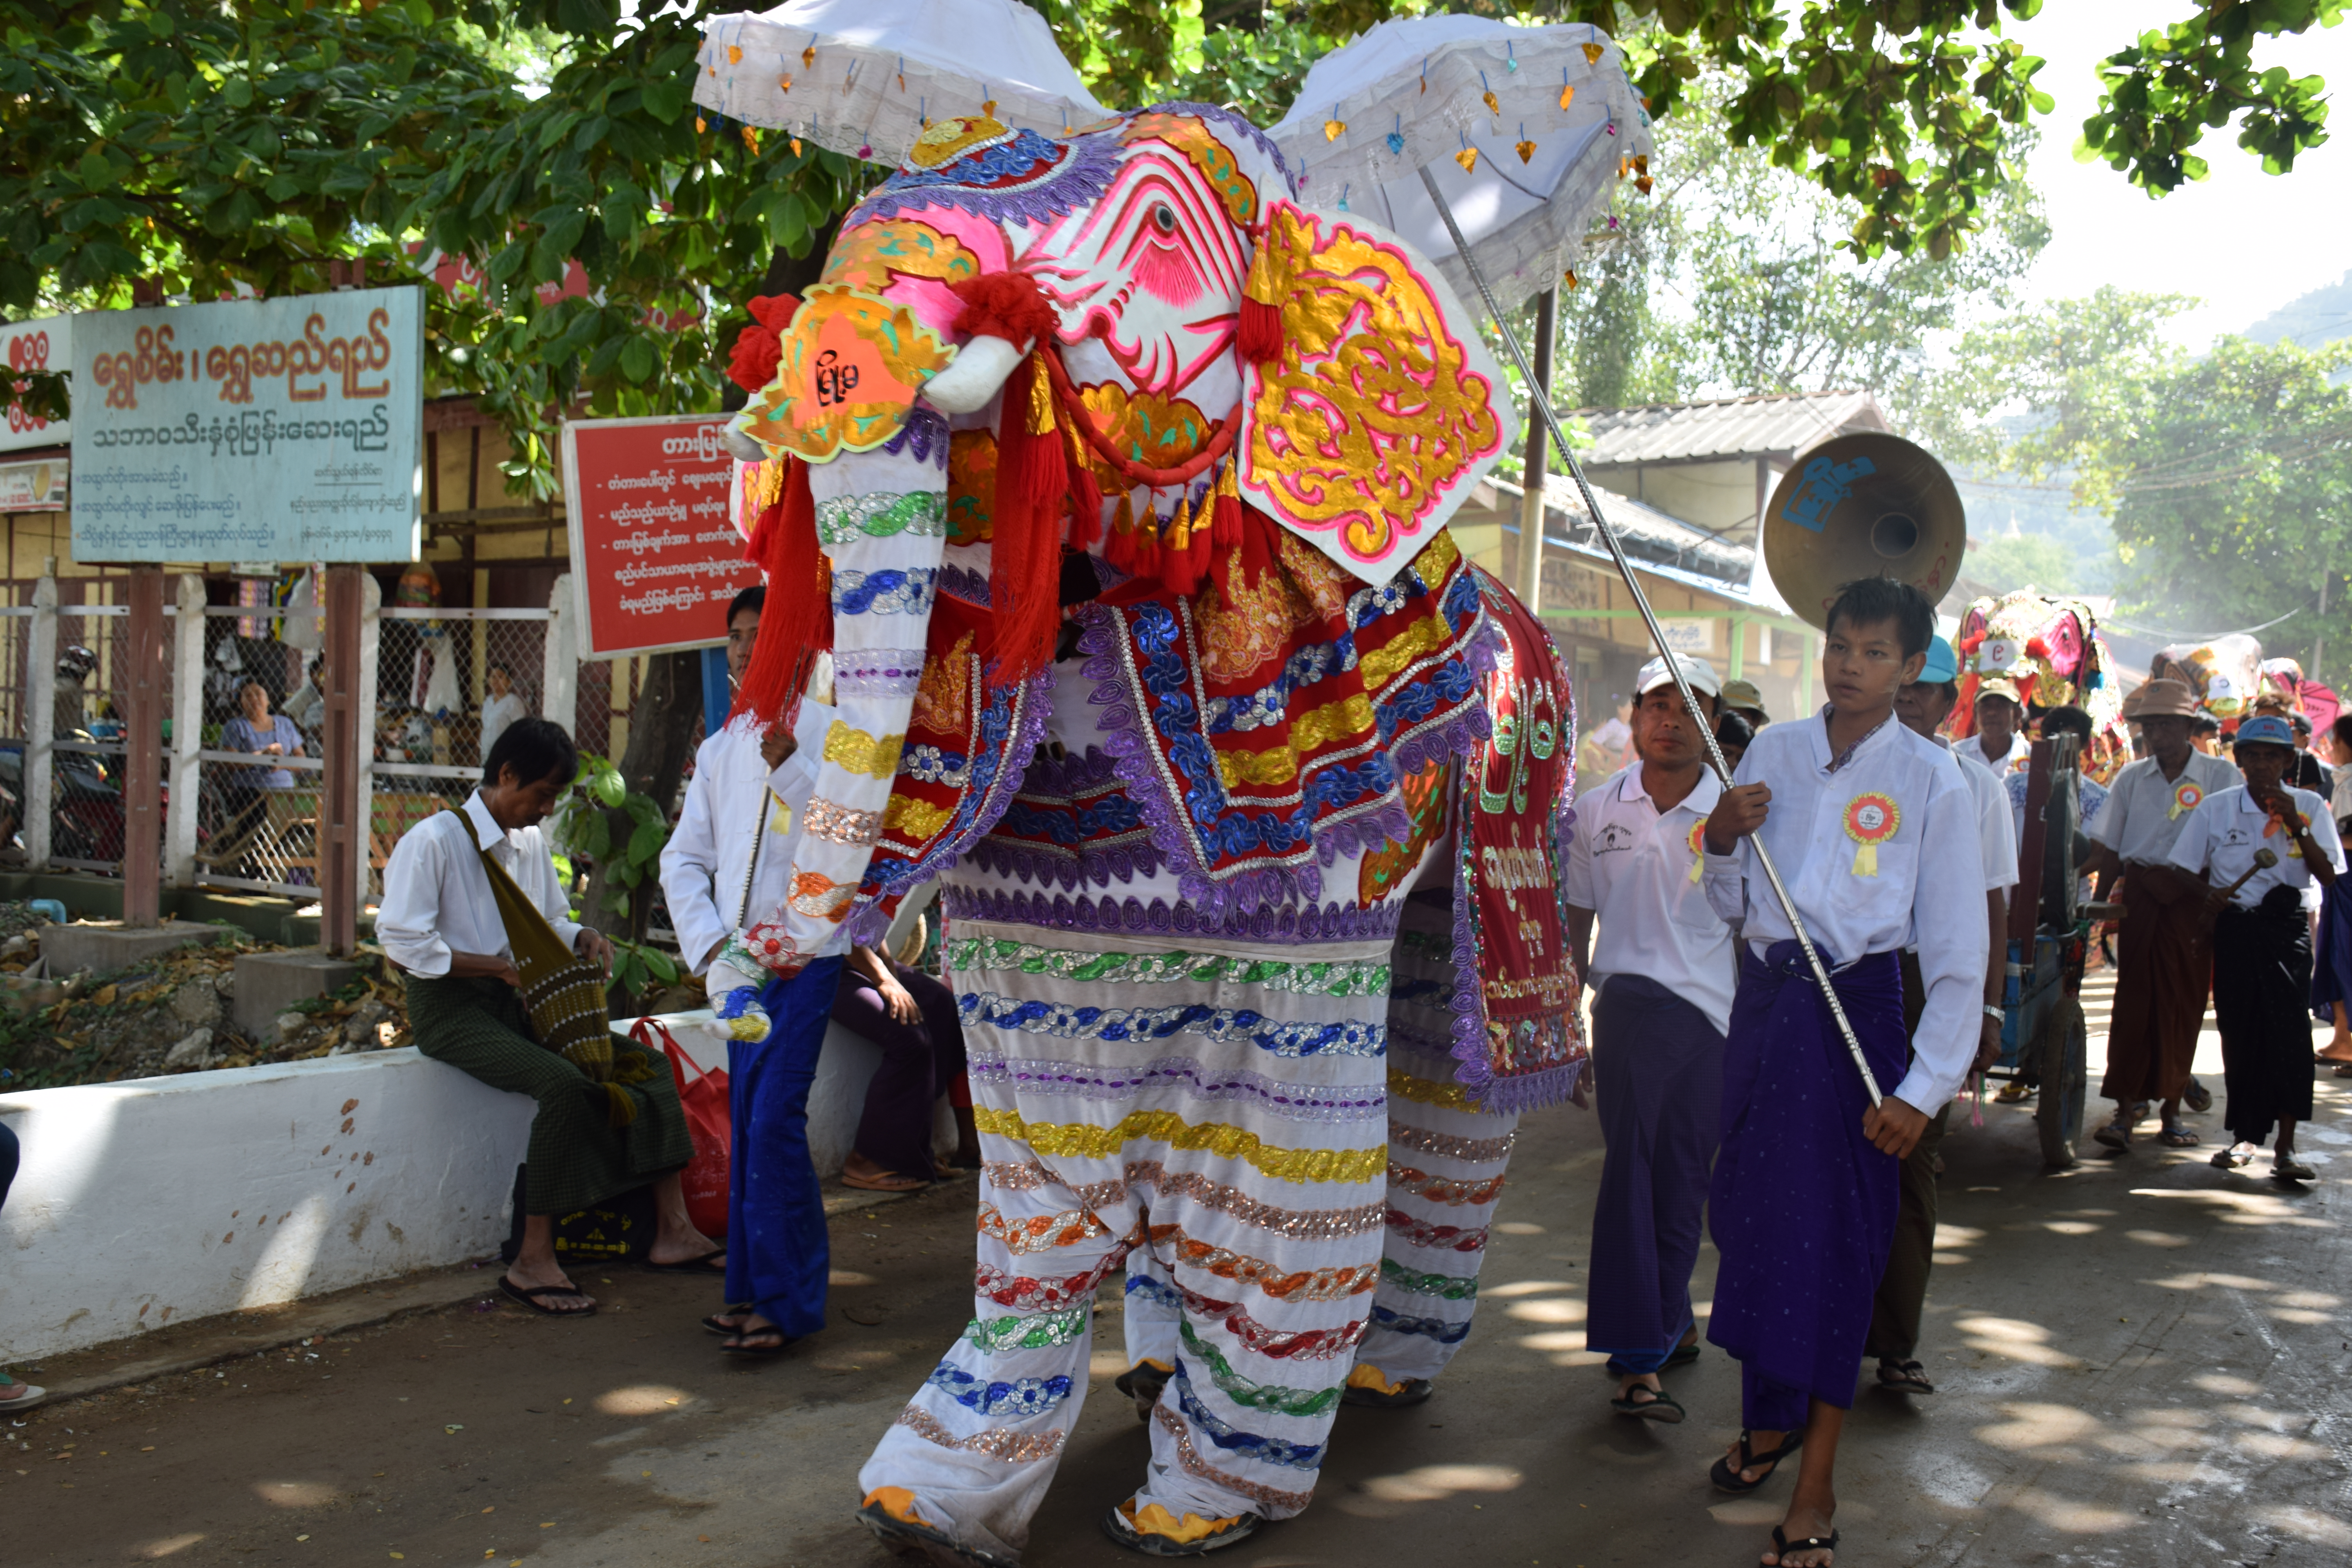  Kyauk Se Elephant dance festival Mandalay – Myanmar